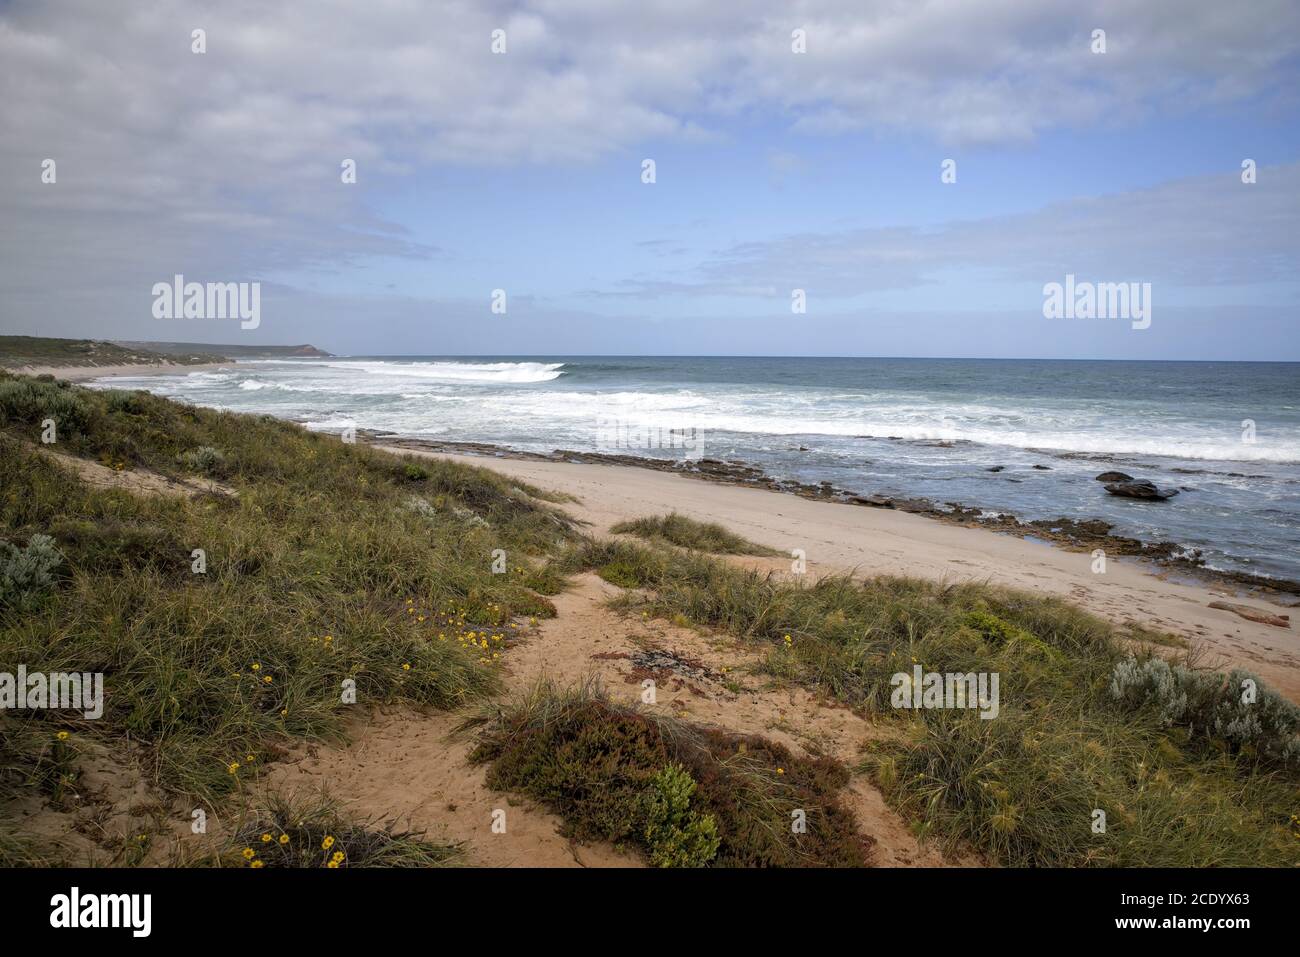 Australie occidentale - littoral rugueux avec ciel nuageux Banque D'Images